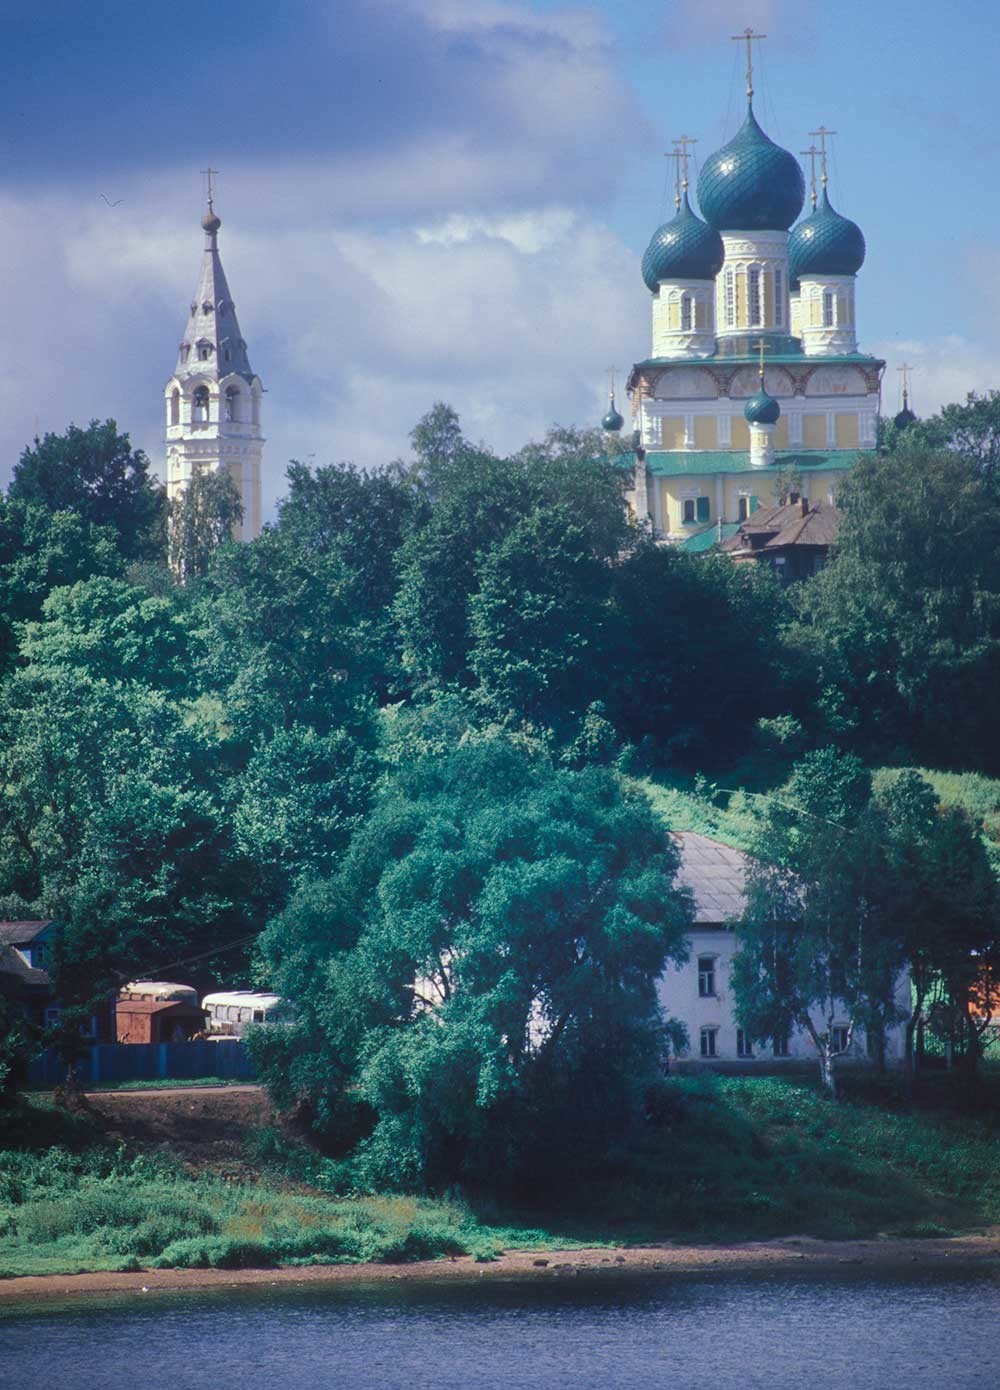 救世主復活大聖堂と鐘楼。ヴォルガ川から（東から）眺める。1997年7月15日。

